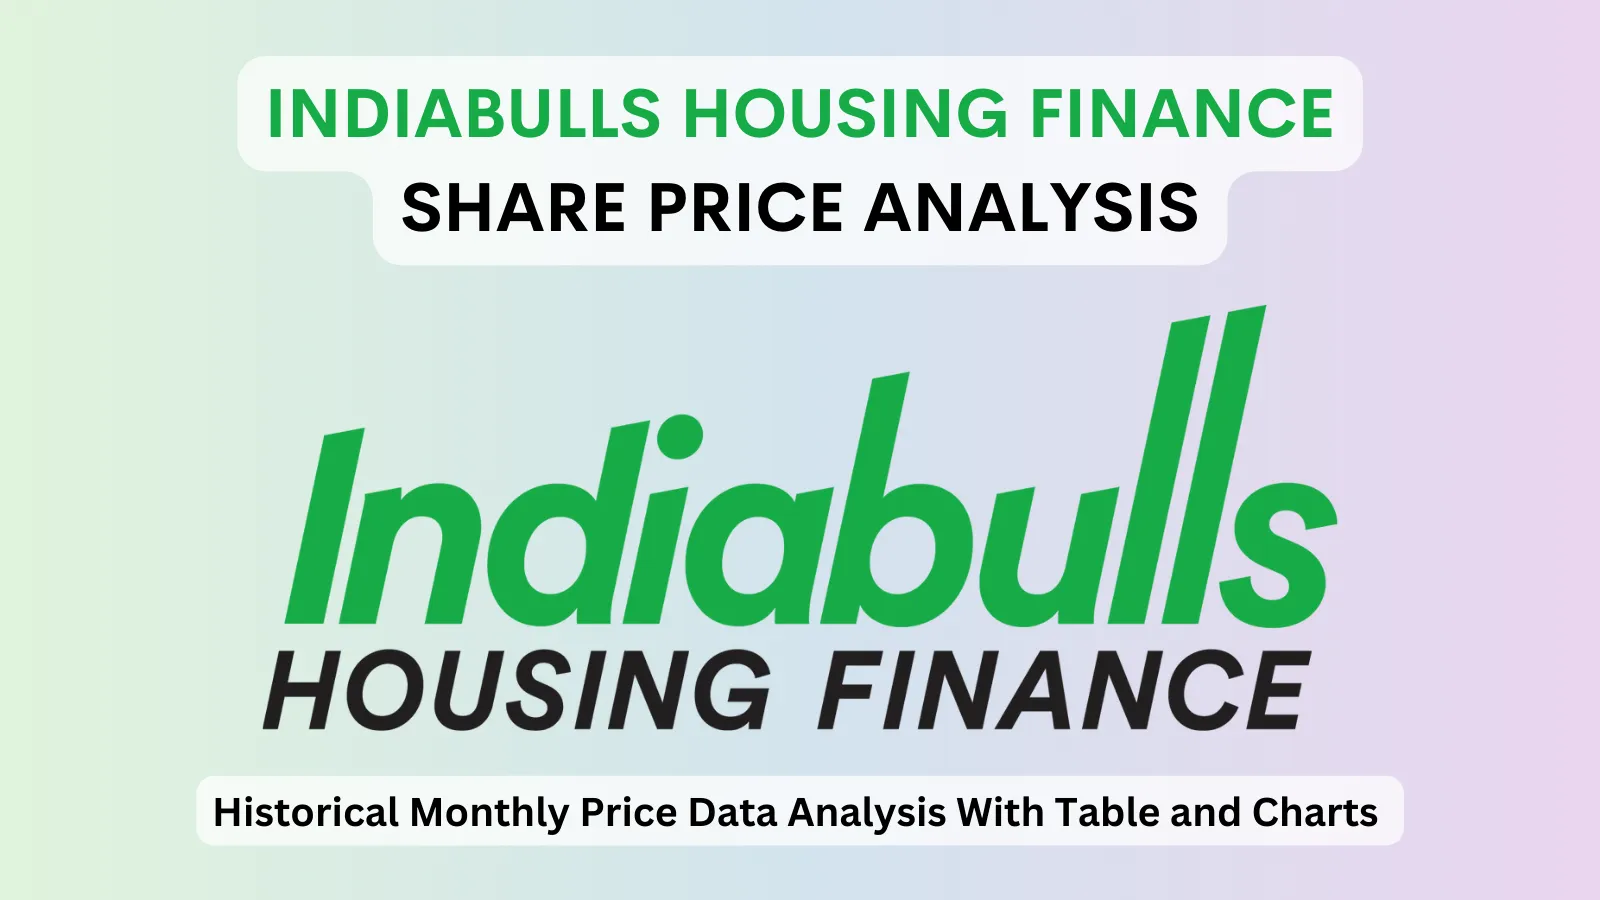 Indiabulls Housing Finance share price analysis